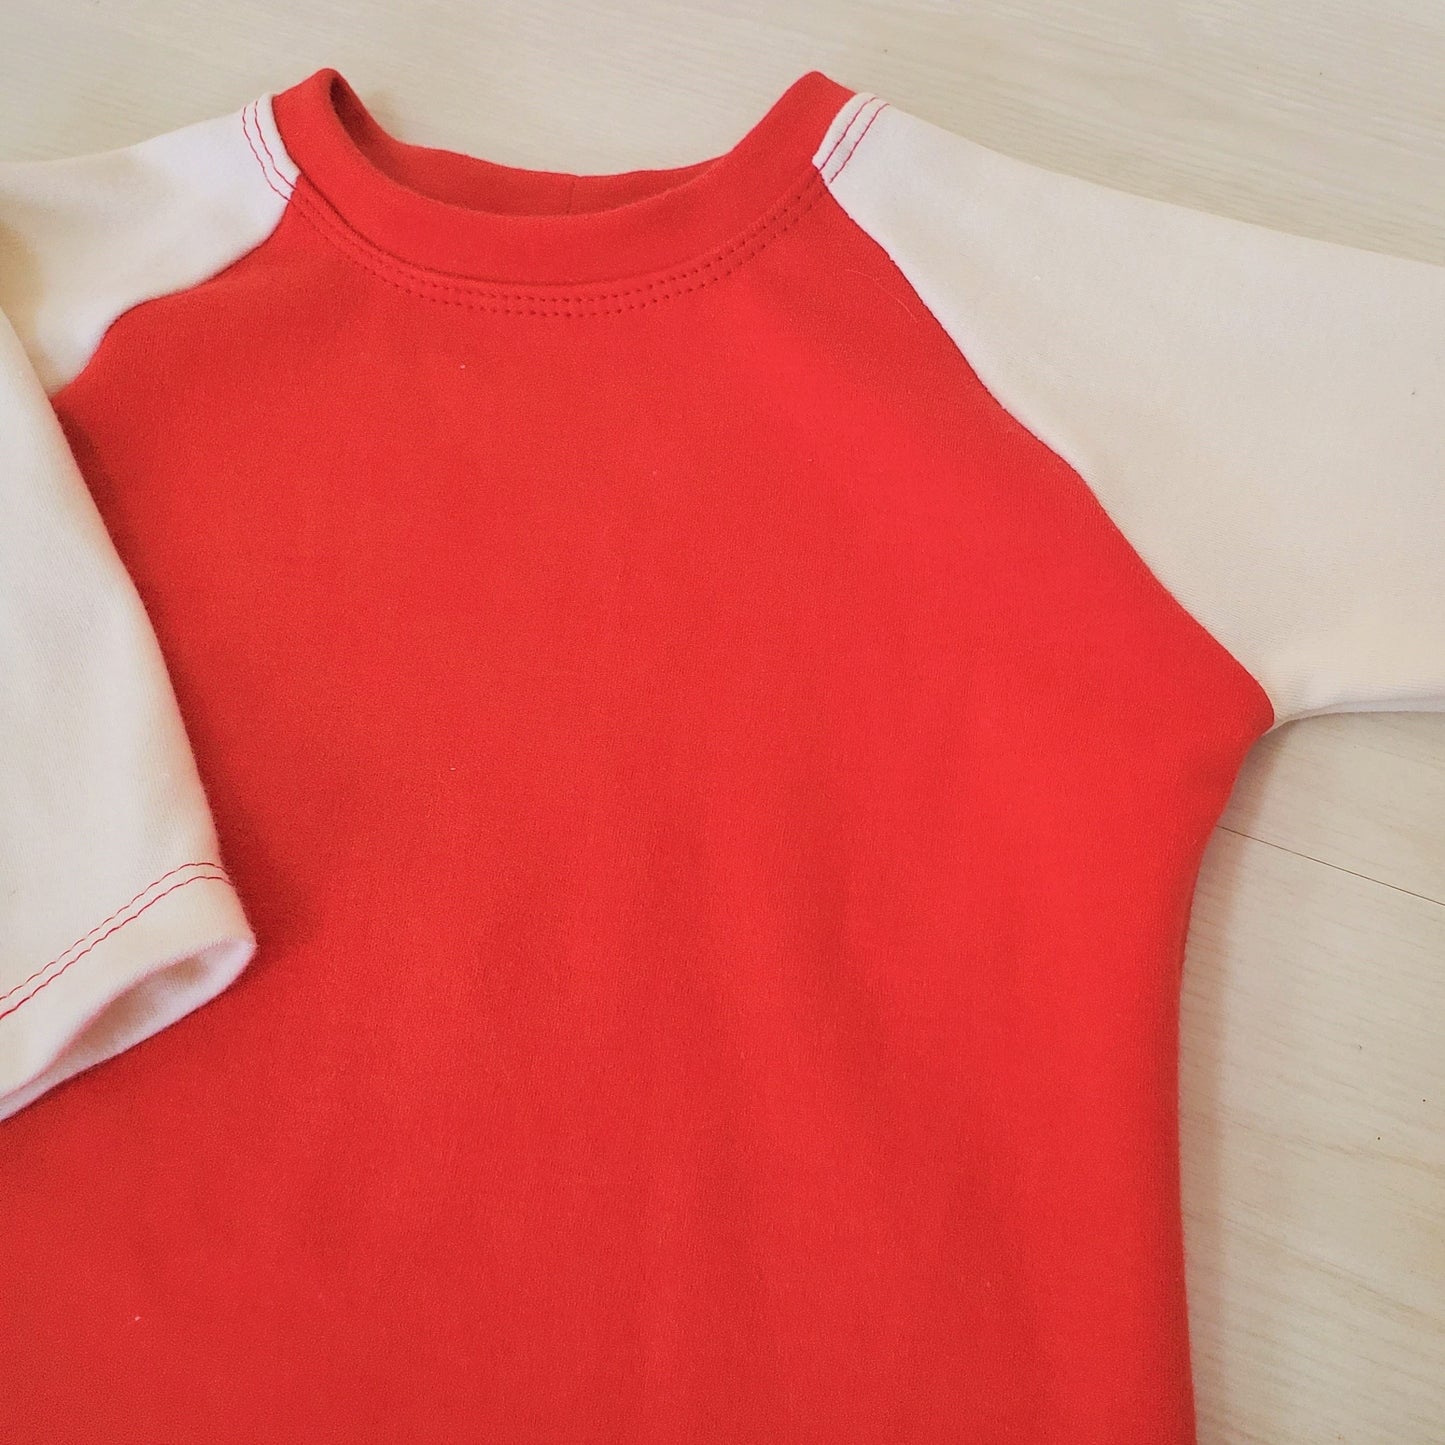 Organic Boy's Raglan Tee Shirt - Toddler Raglan Tee Shirt - Unisex Tee Shirt - Raglan Shirt